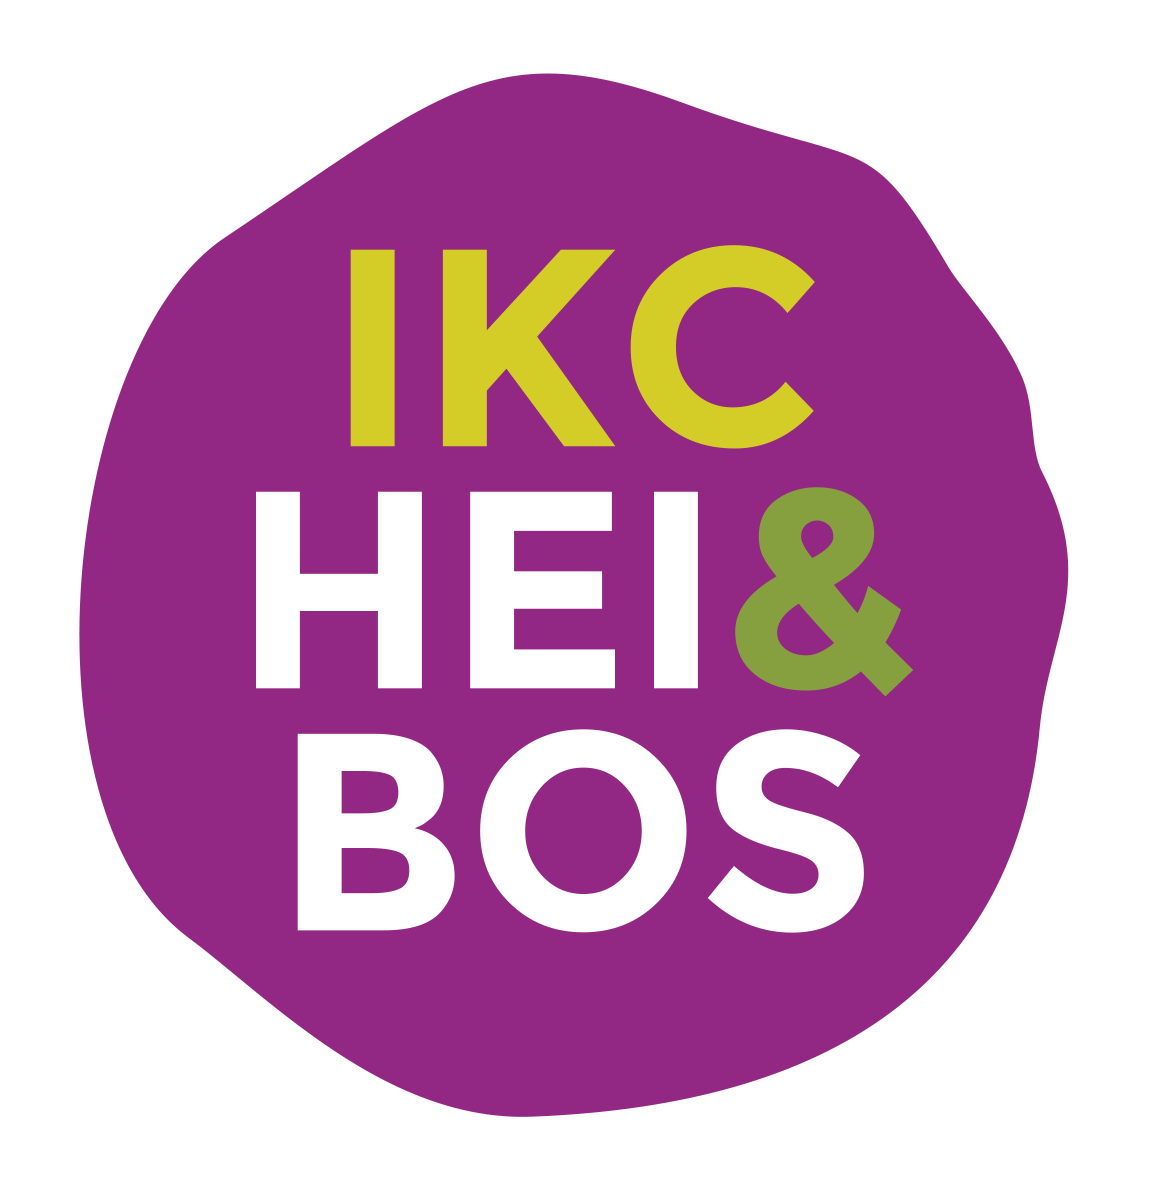 IKC HEI&BOS – VASTGOEDBEHEER